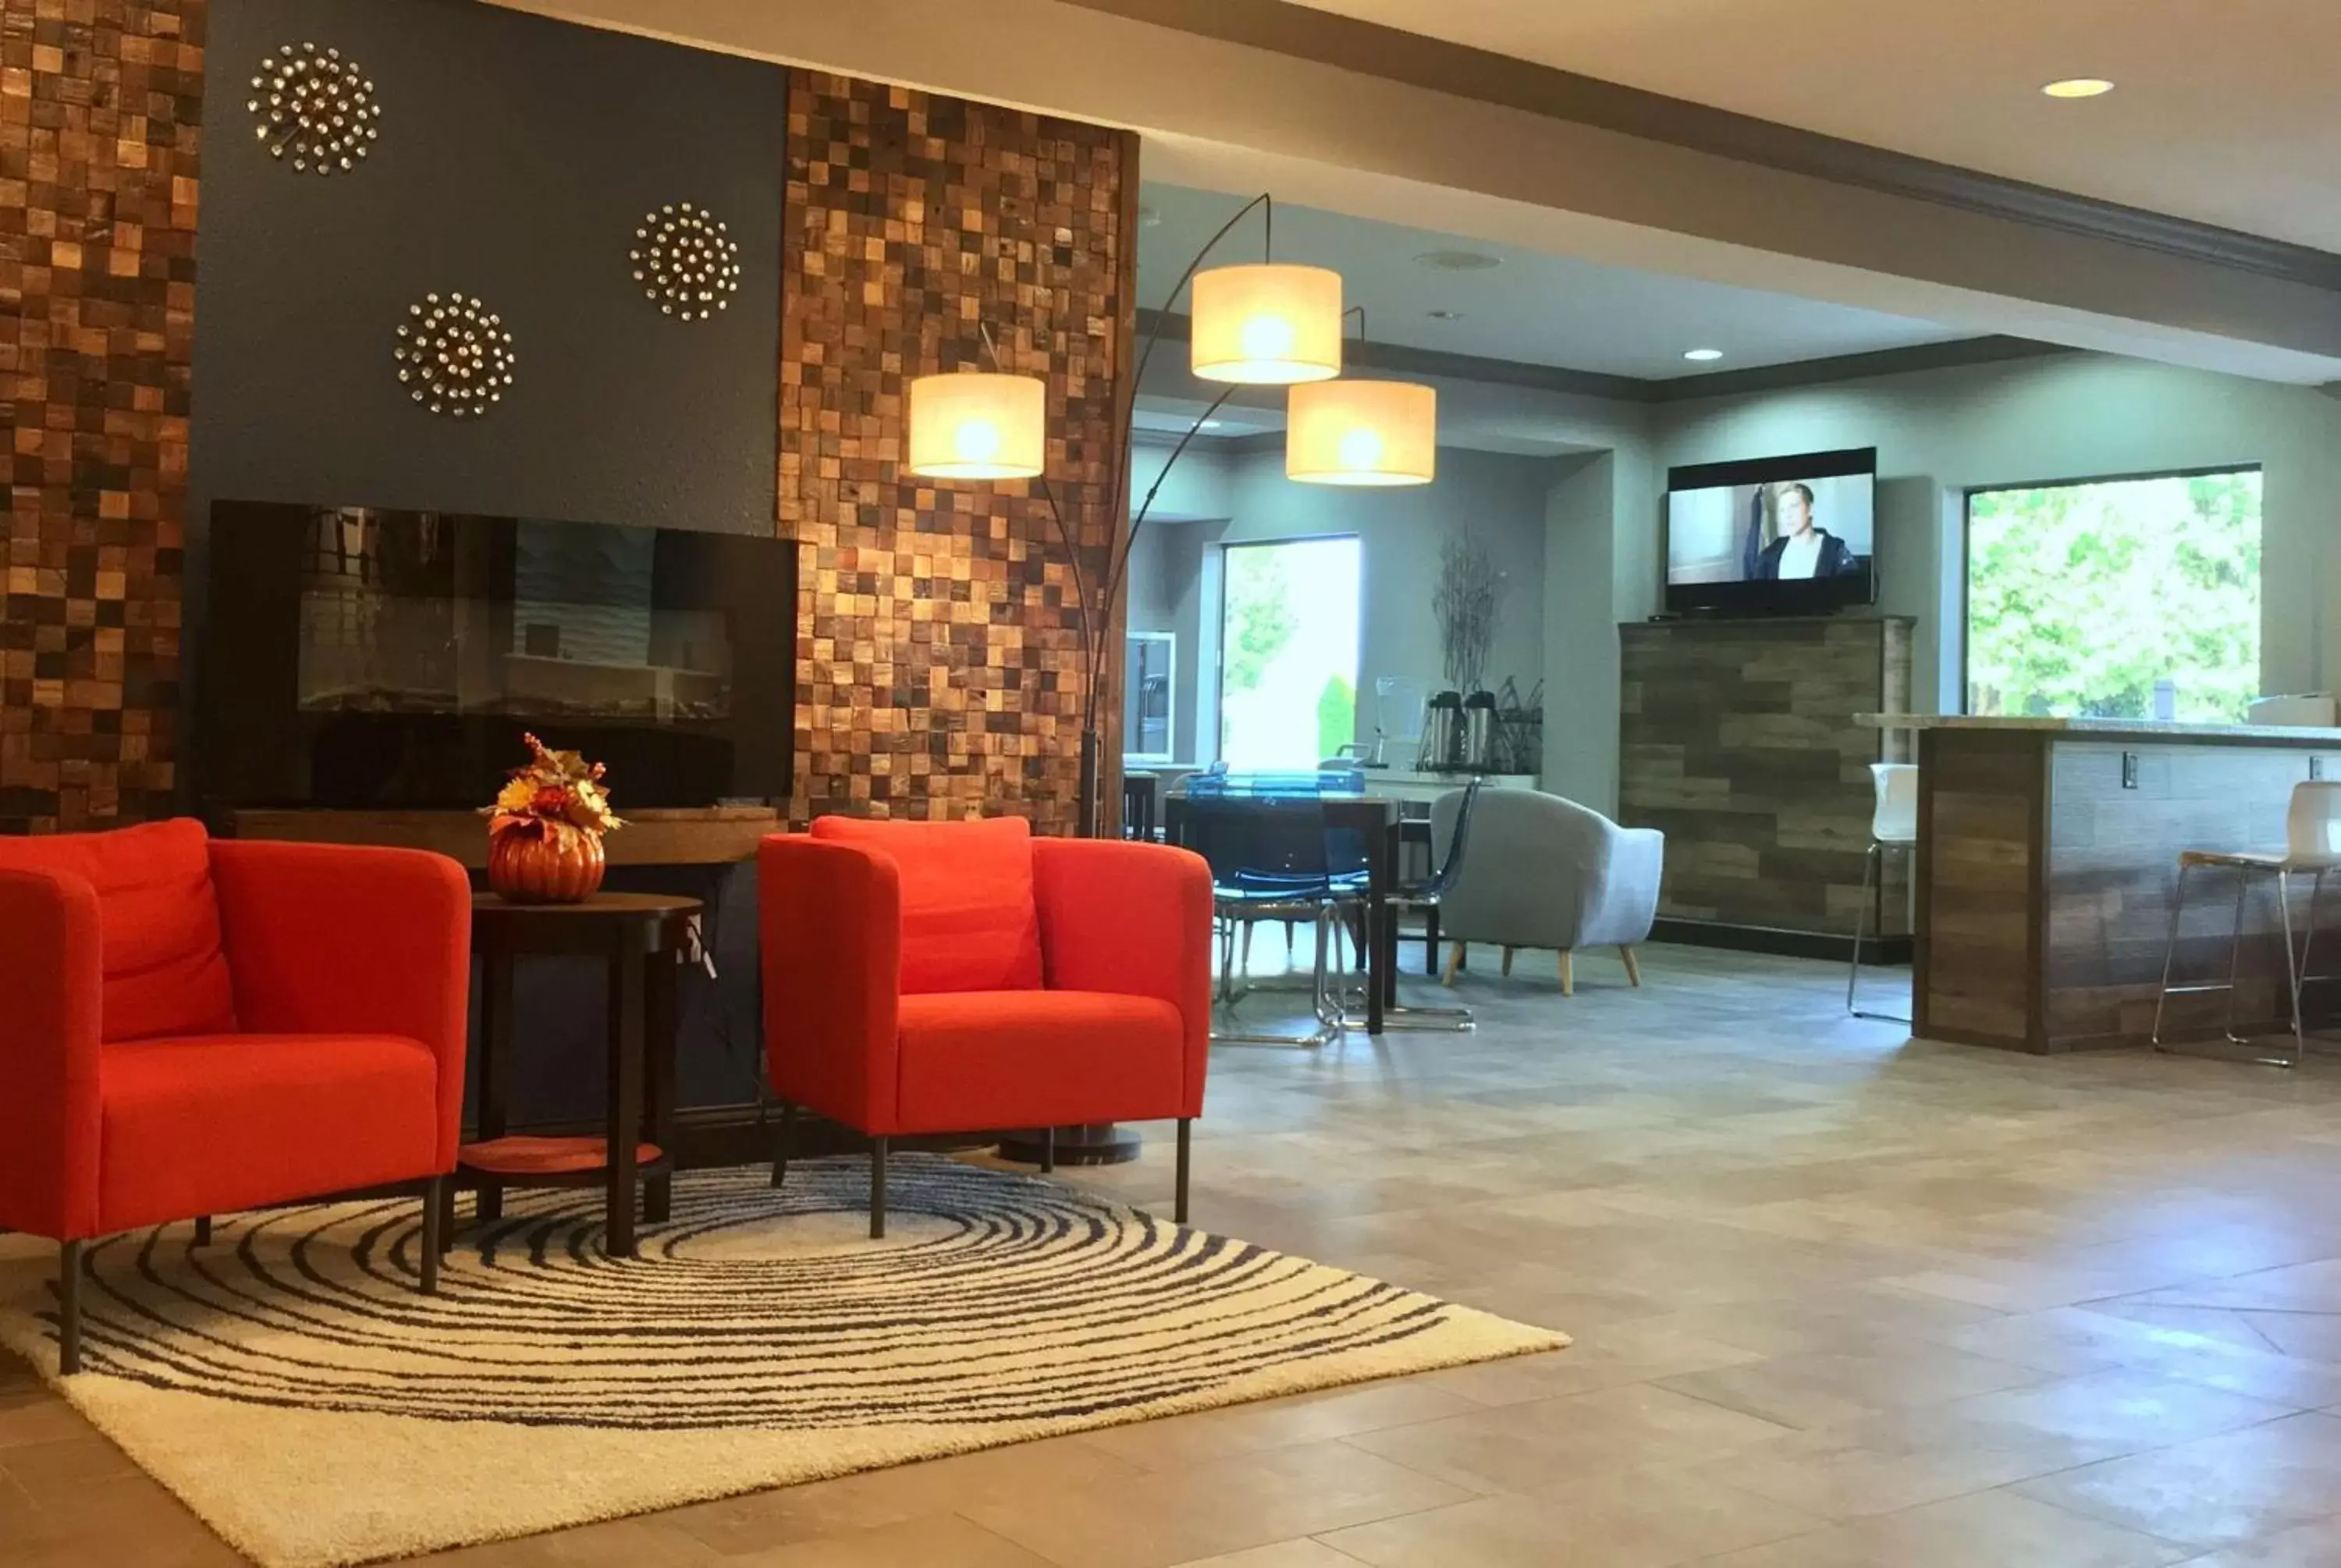 Lobby or reception, Lobby/Reception in Baymont by Wyndham O'Fallon St. Louis Area